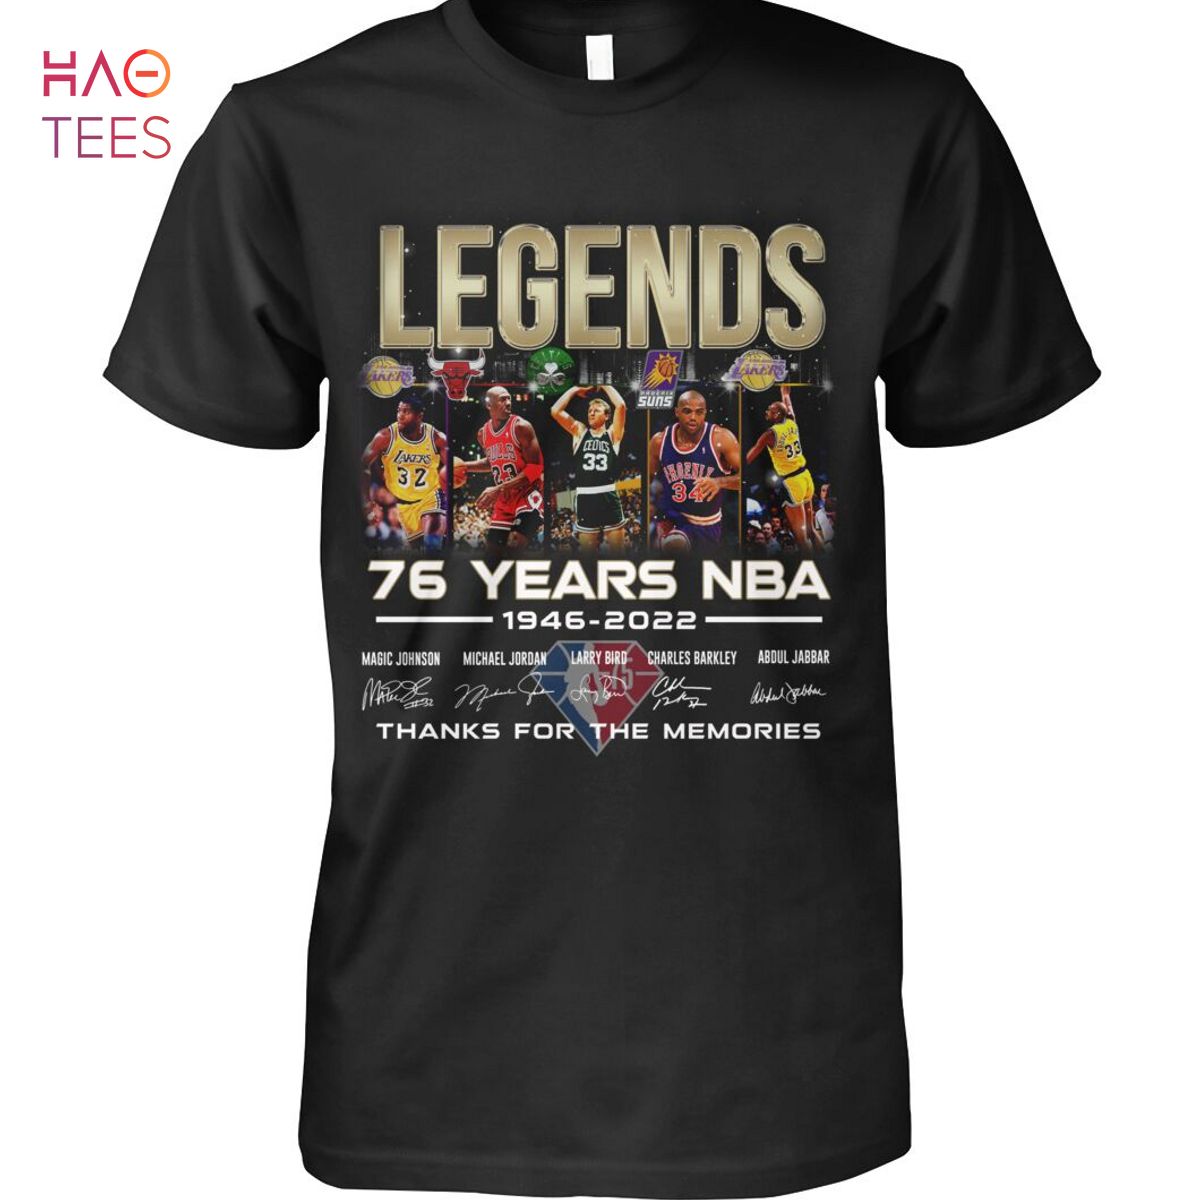 Legends 76 Years NBA 1946-2022 Shirt